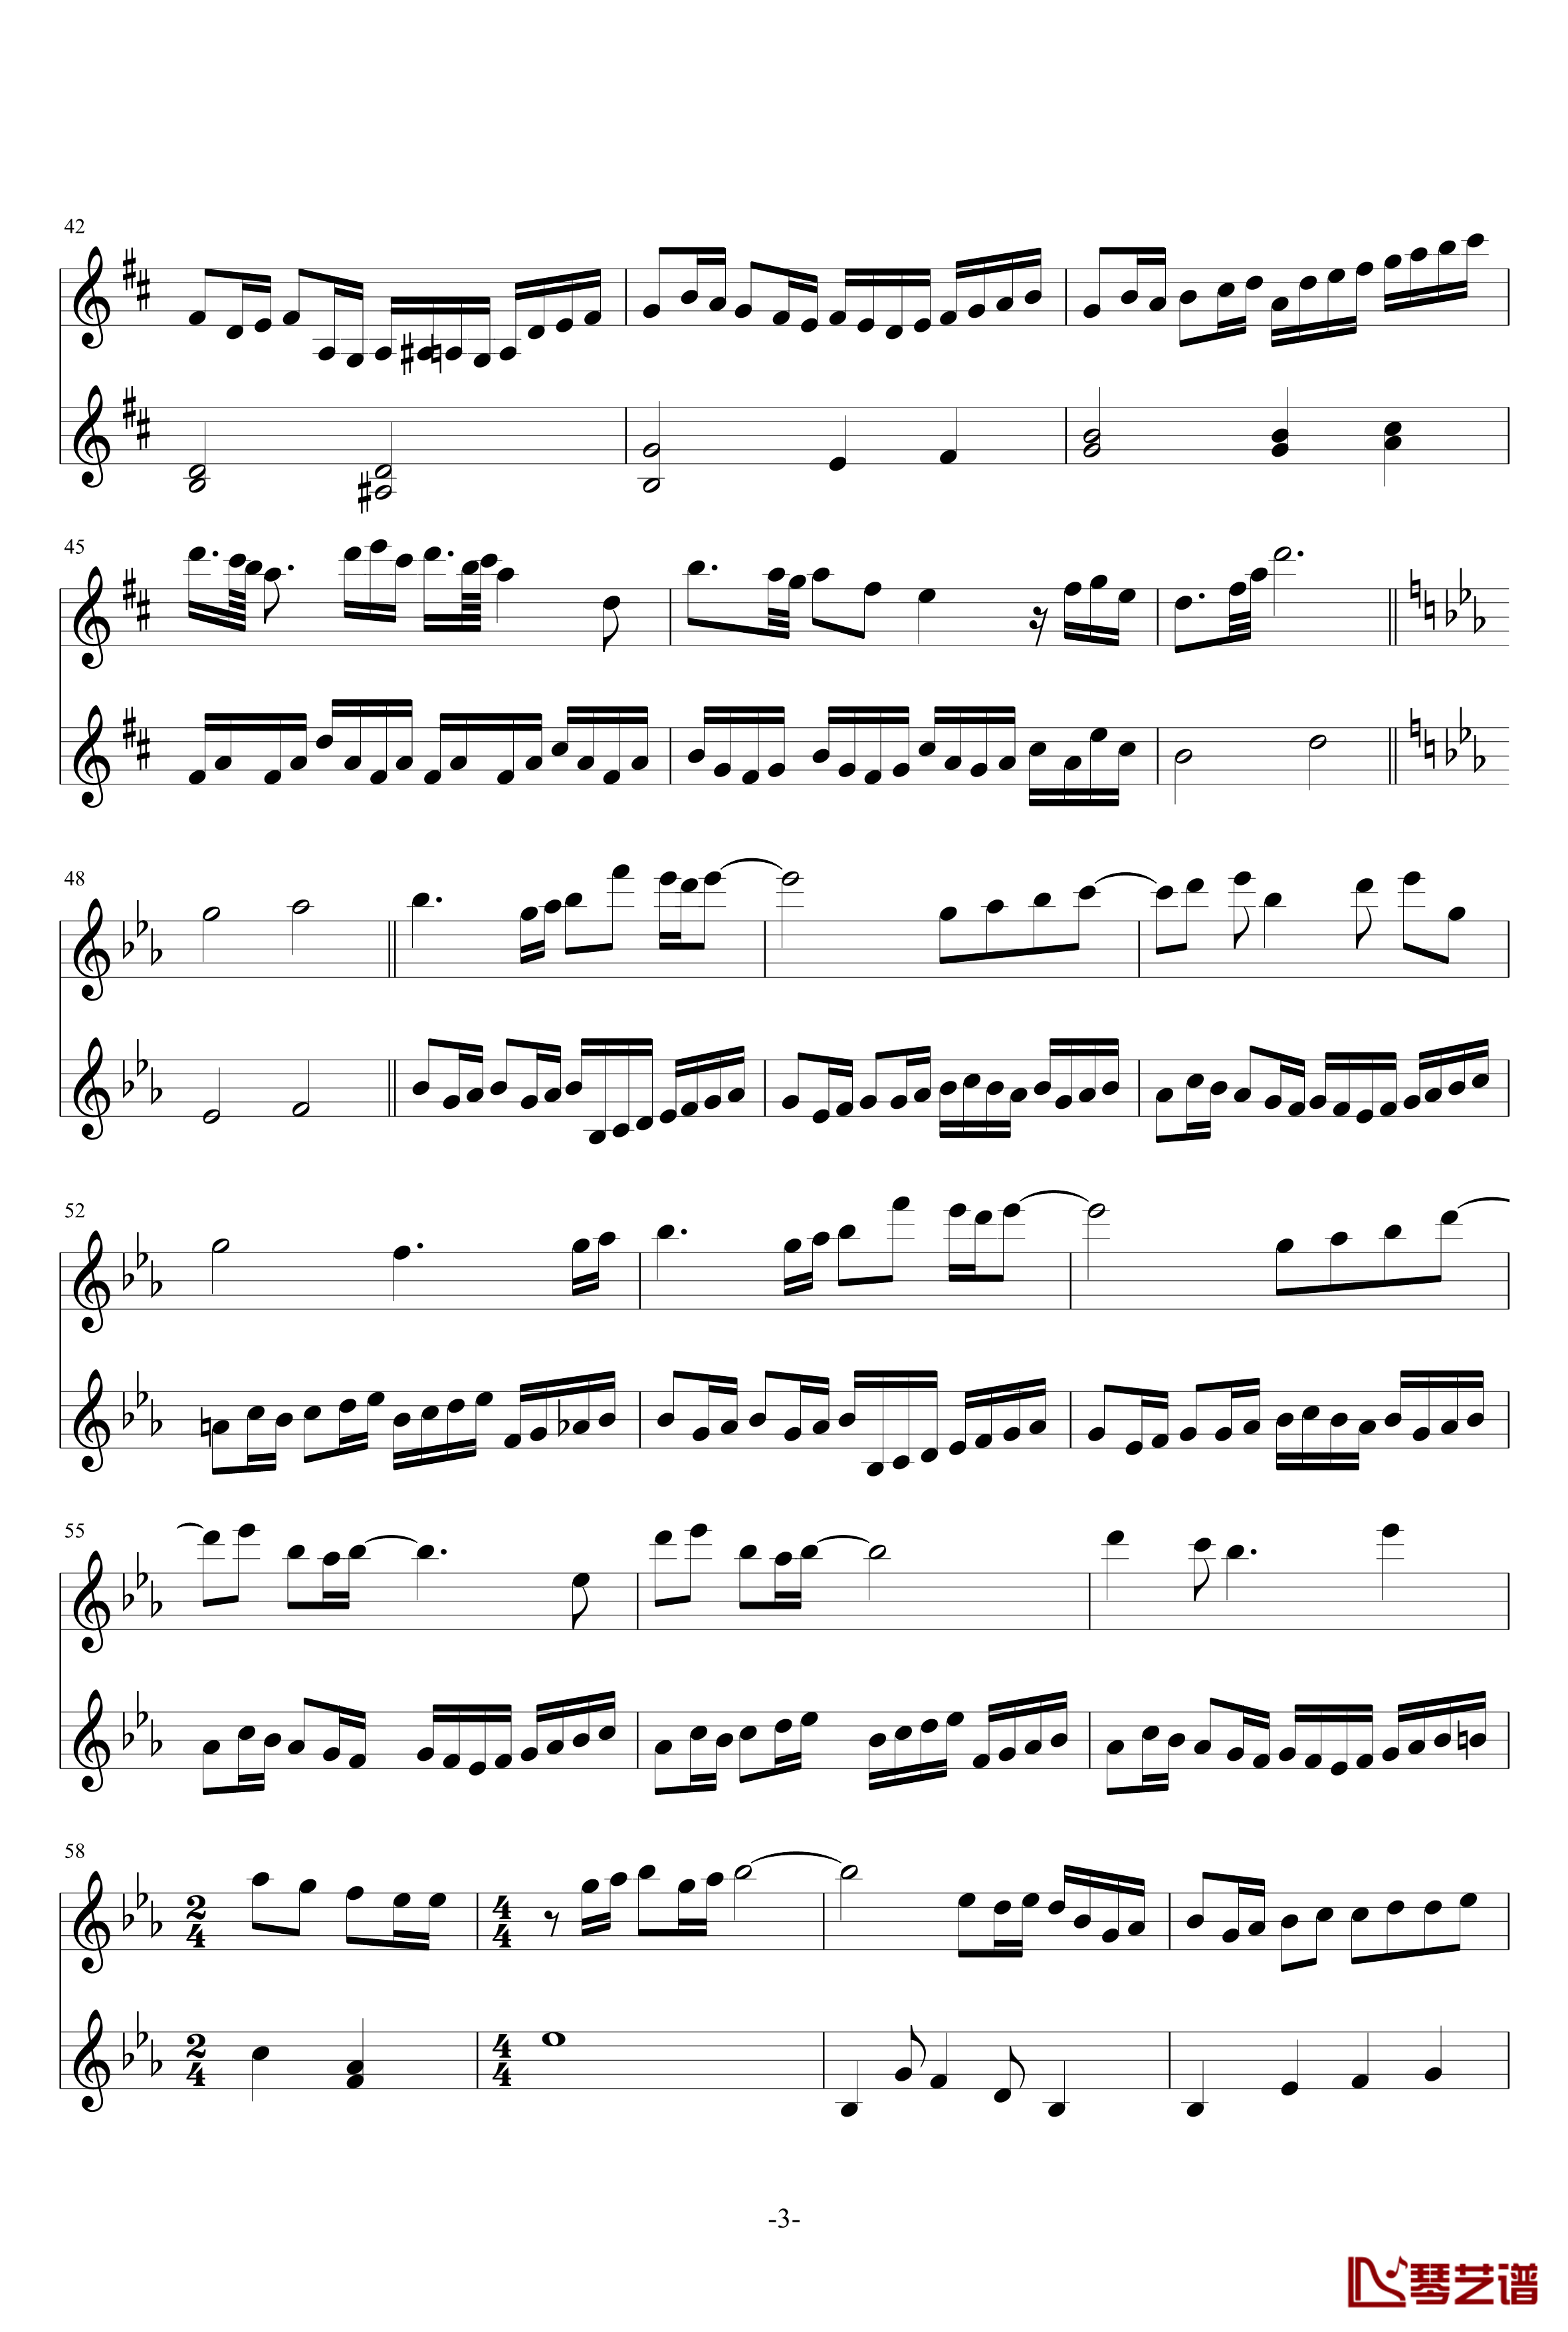 卡农欢乐版钢琴谱-双小提琴版-帕赫贝尔-Pachelbel3